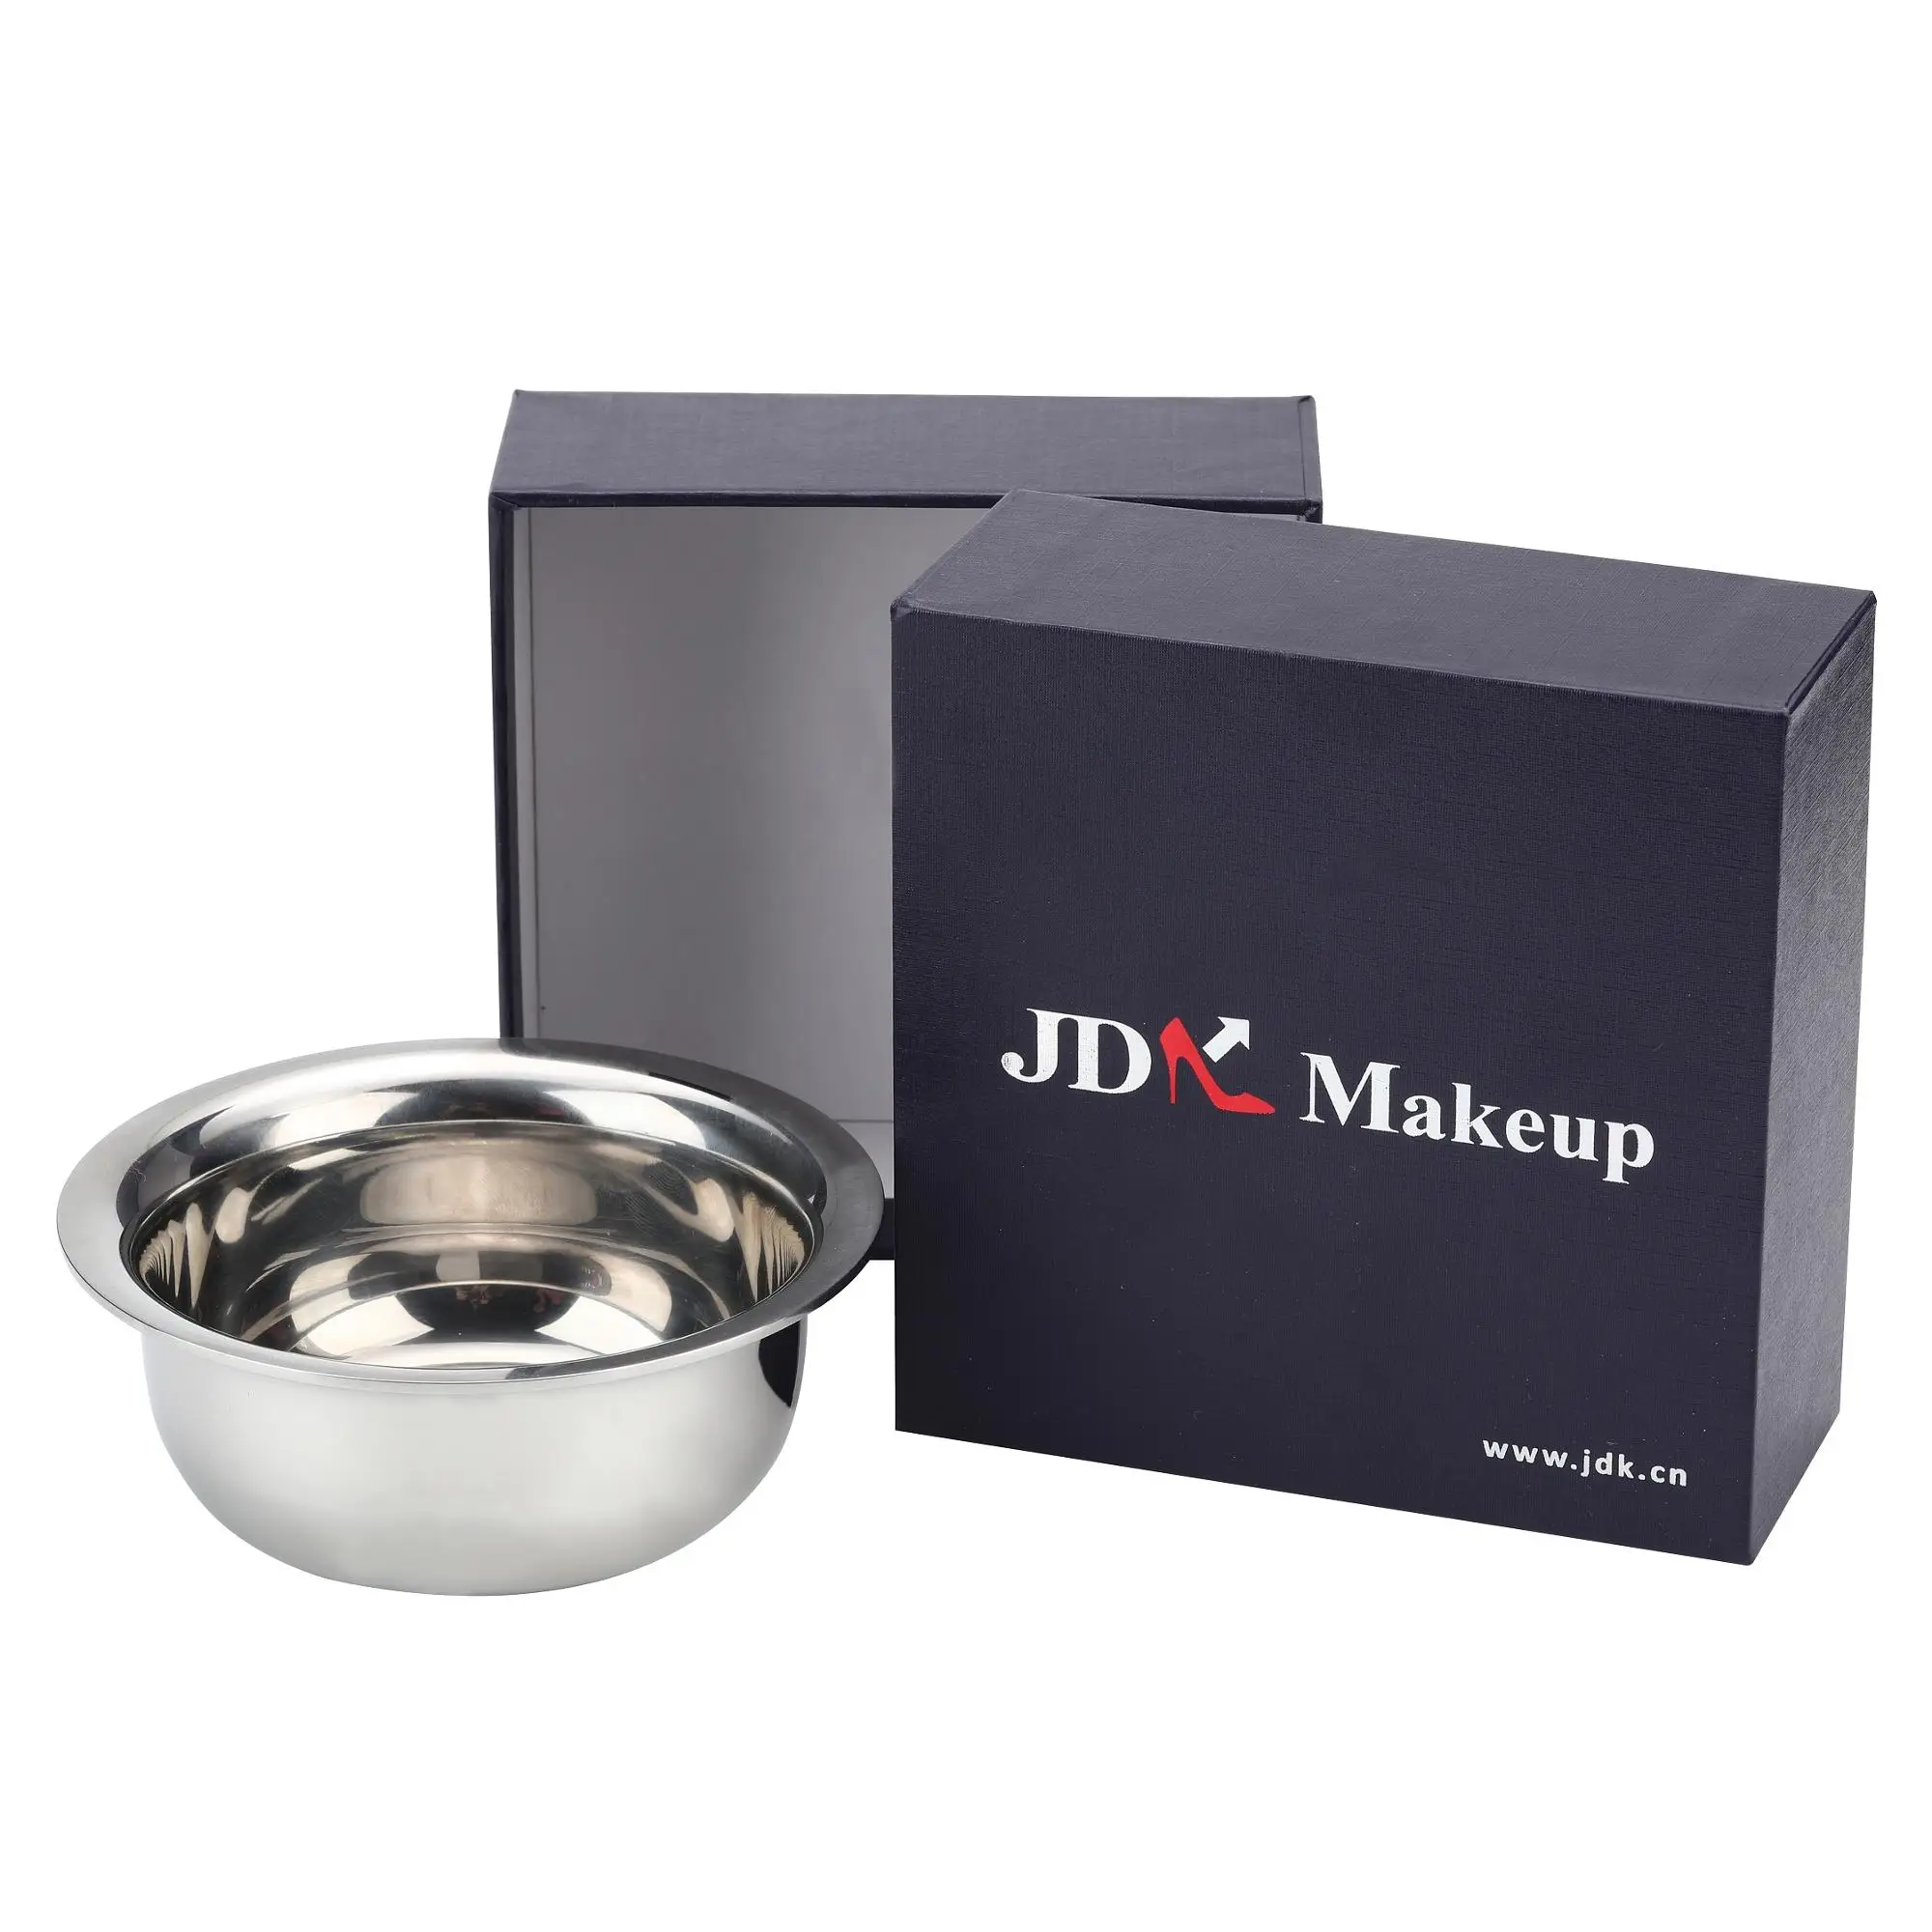 
JDK Amazon Бестселлер современный хромированный мыльница для бритья  (60841680751)